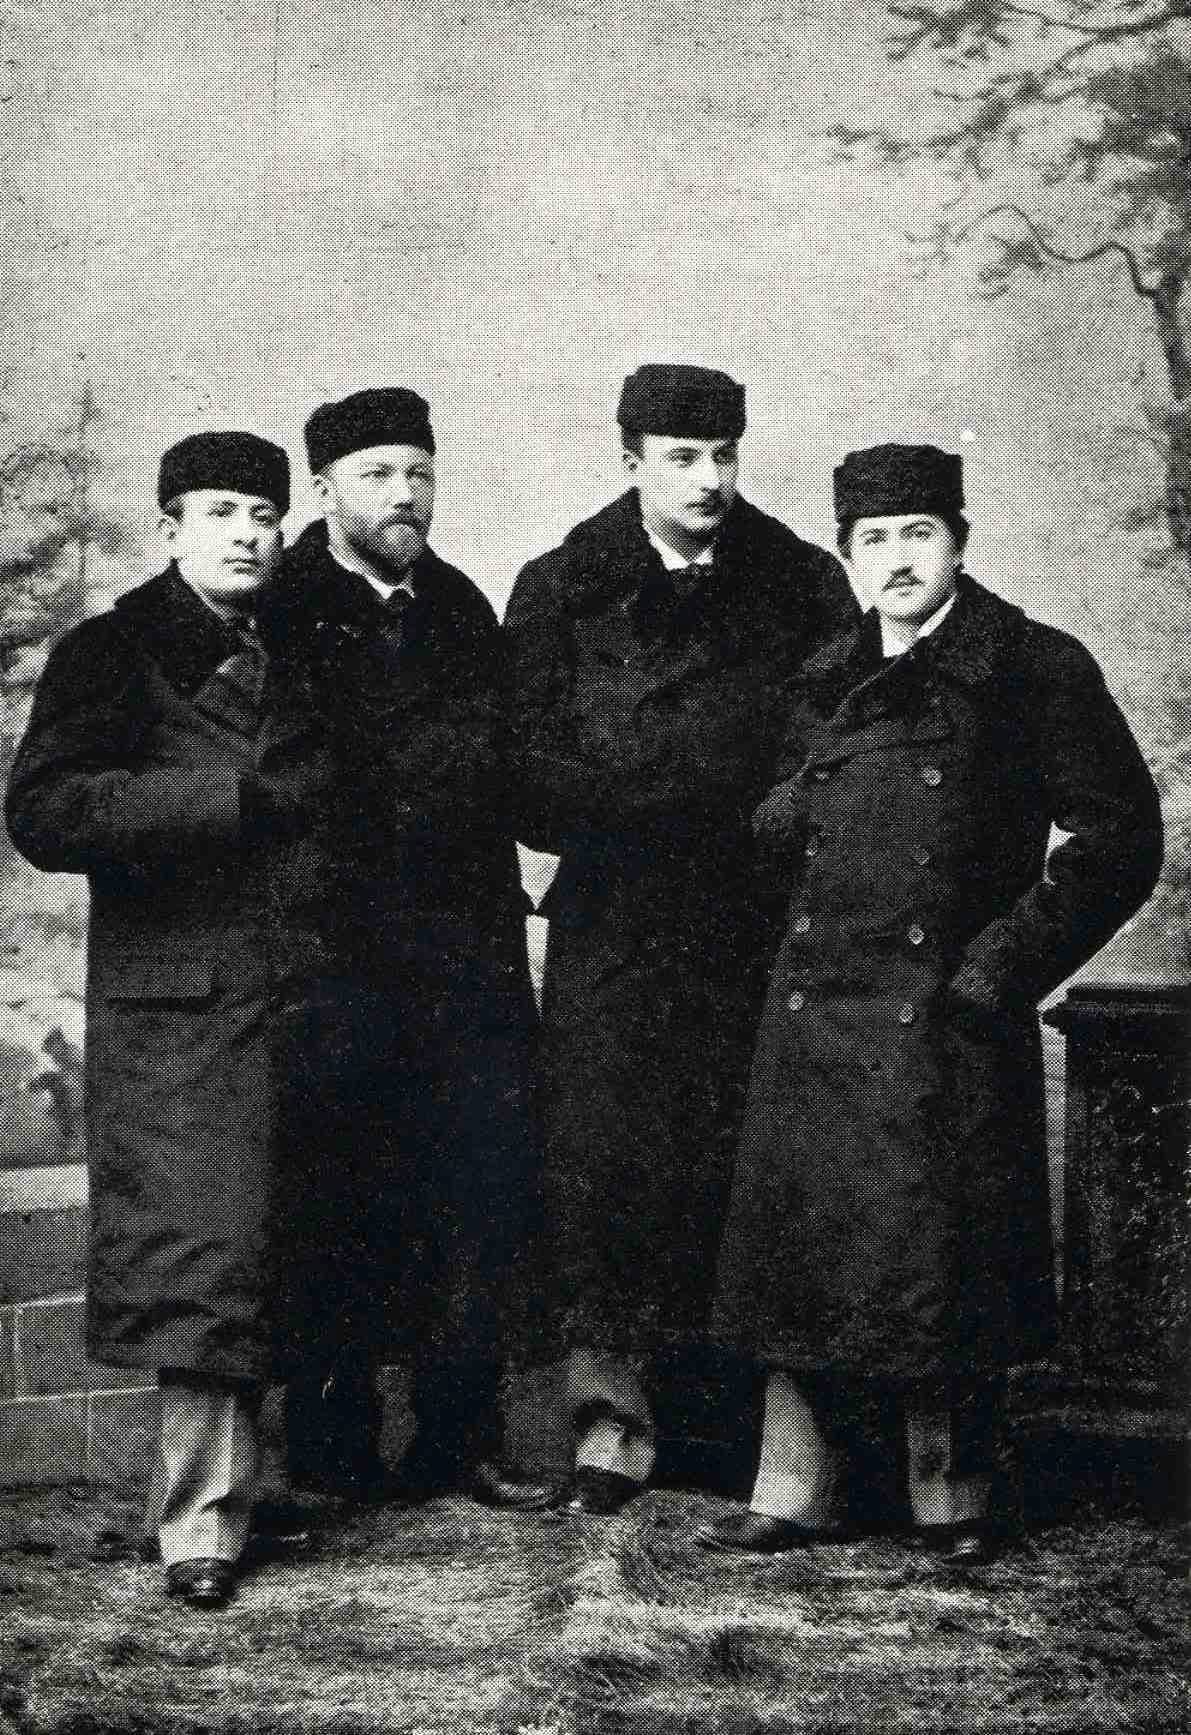 The Czech Quartet